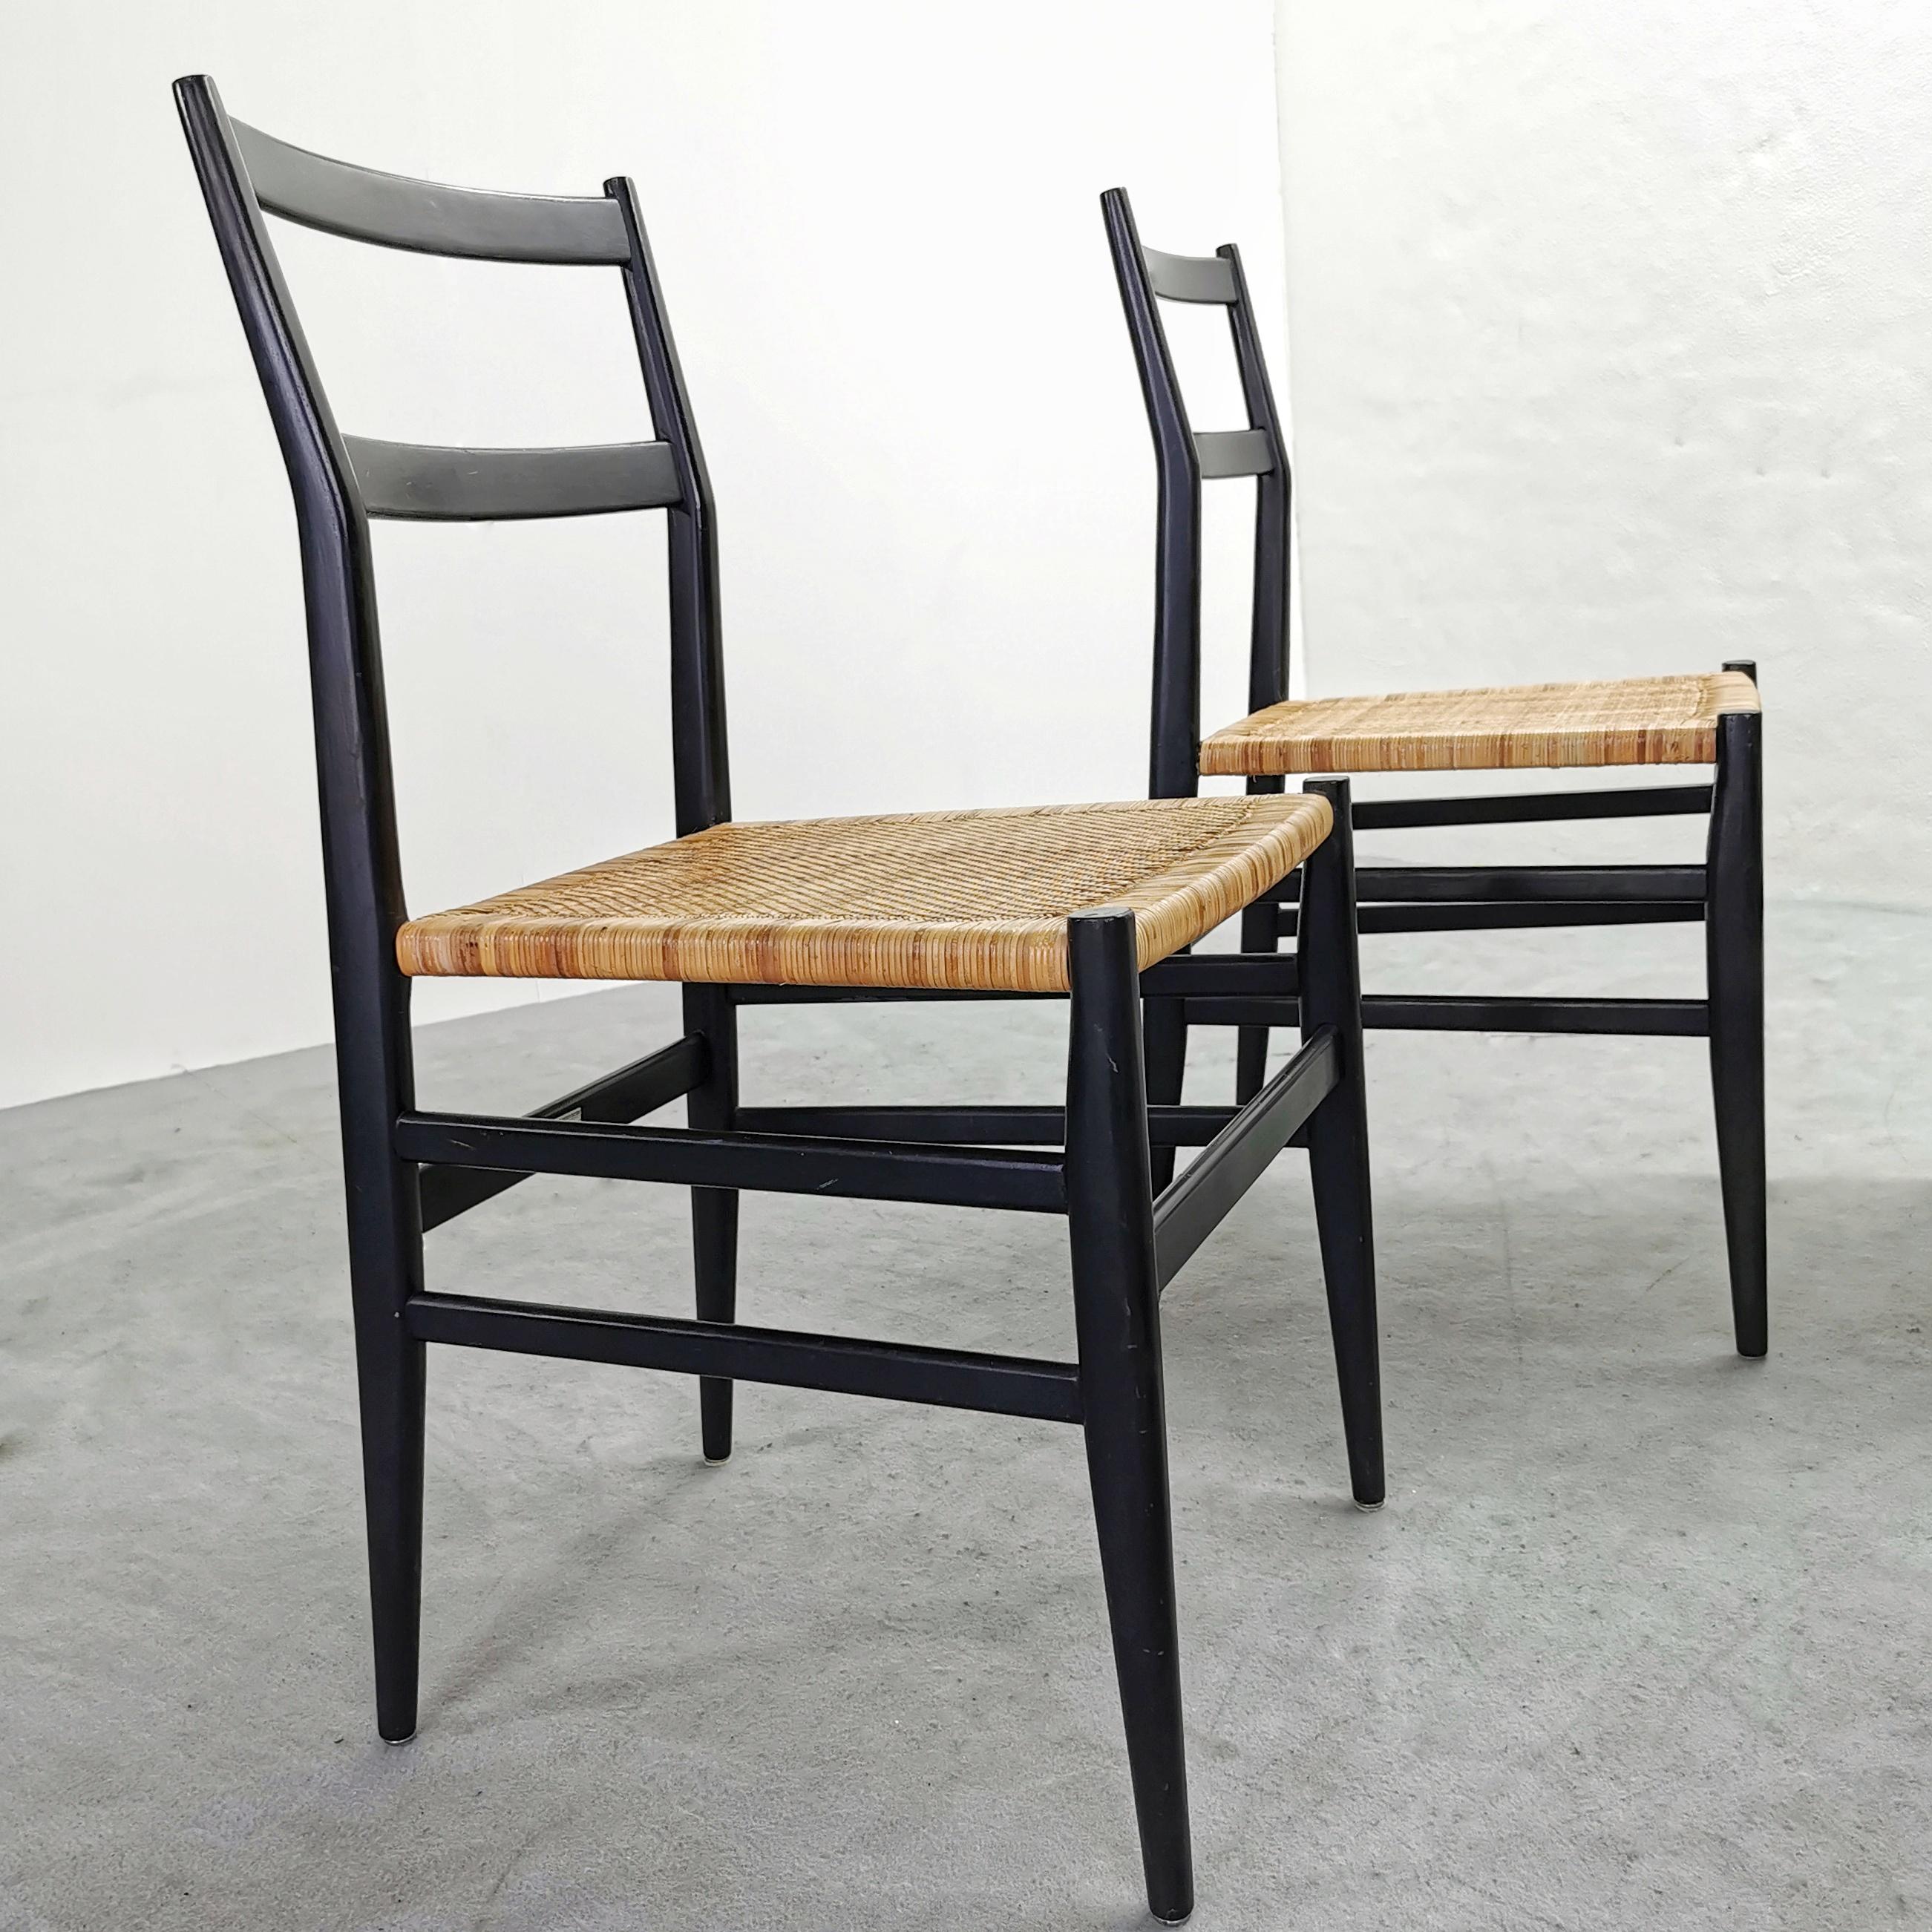 La sedia Leggera è una delle piu iconiche espressioni del design di Gio Ponti disegnata nel 1952.
E' frutto di approfonditi studi fatti al tempo per ottenere una sedia molto leggera ma altrettanto solida.
E' stata da sempre prodotta da Cassina che